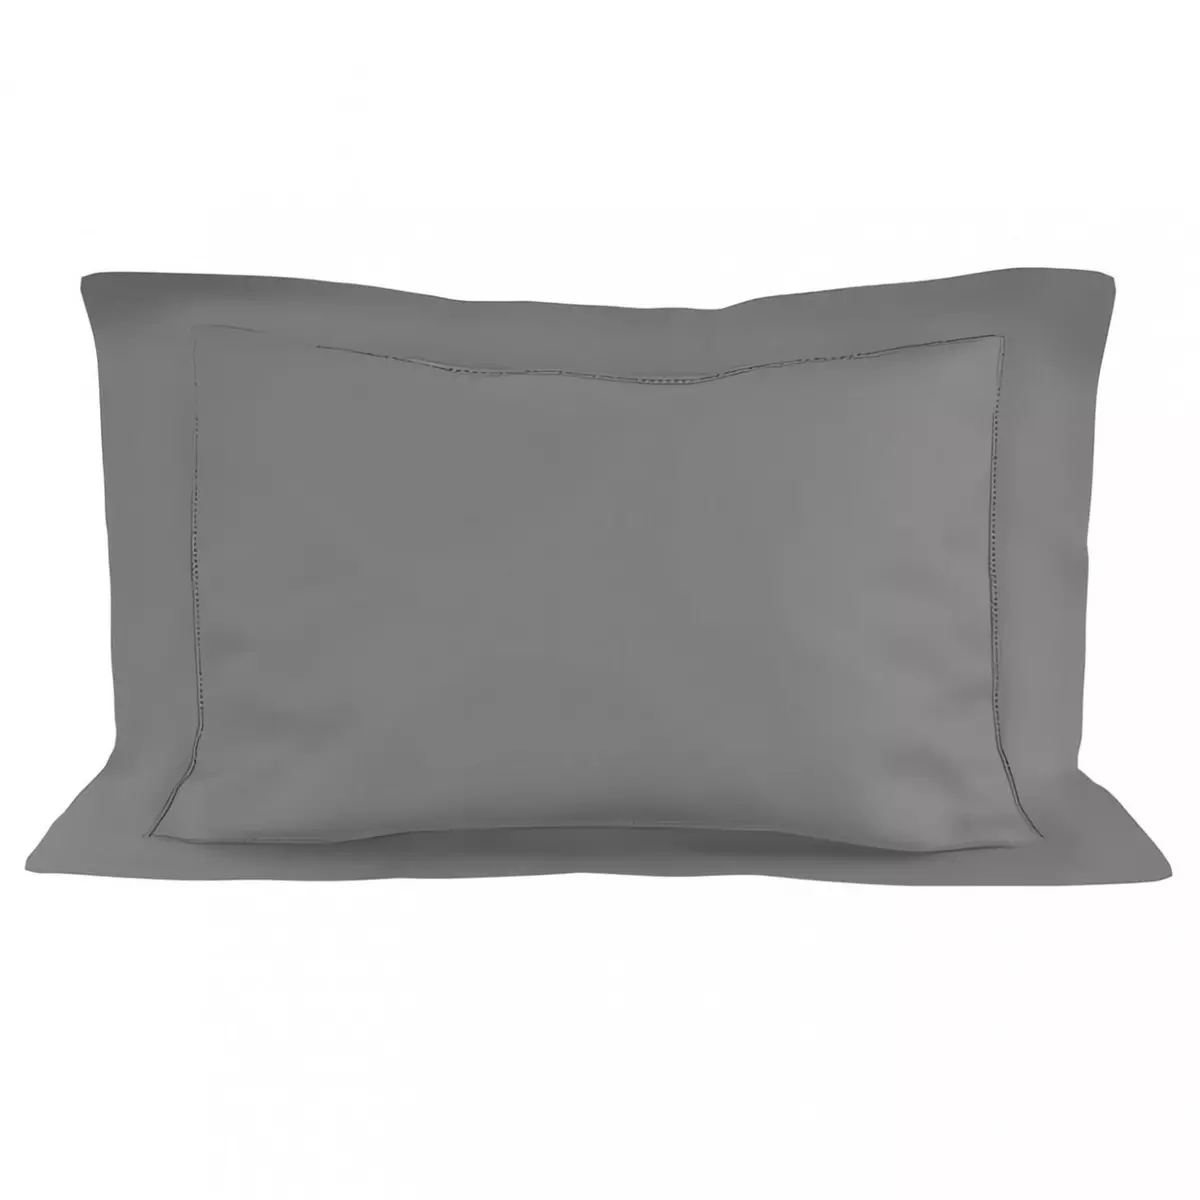 SOLEIL D'OCRE Taie d'oreiller en coton 50x75 cm PERCALE gris, par Soleil d'ocre